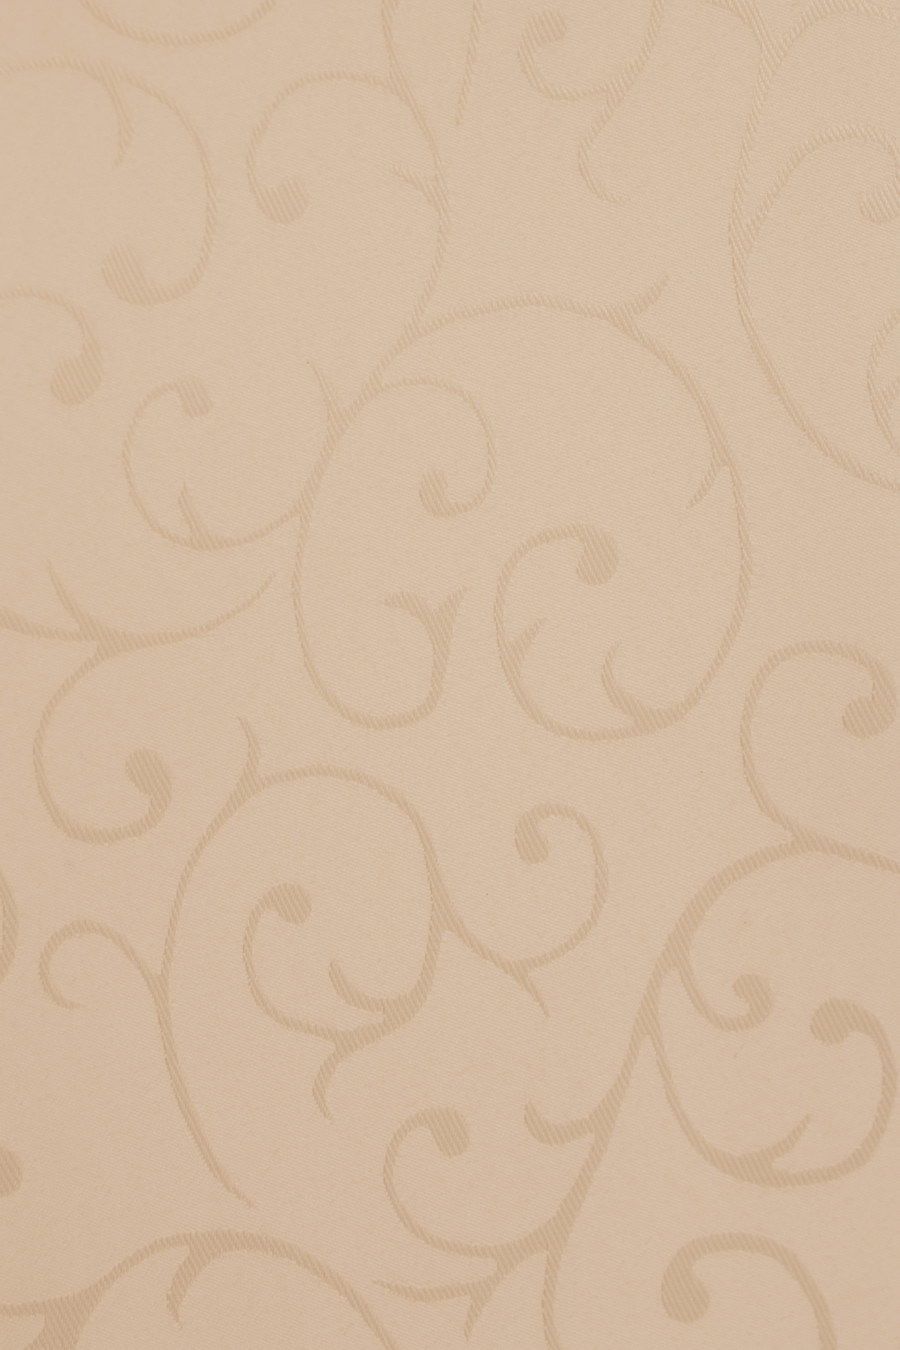 Ткань JAQUARD абрикосовый z931-2170 для рольштор